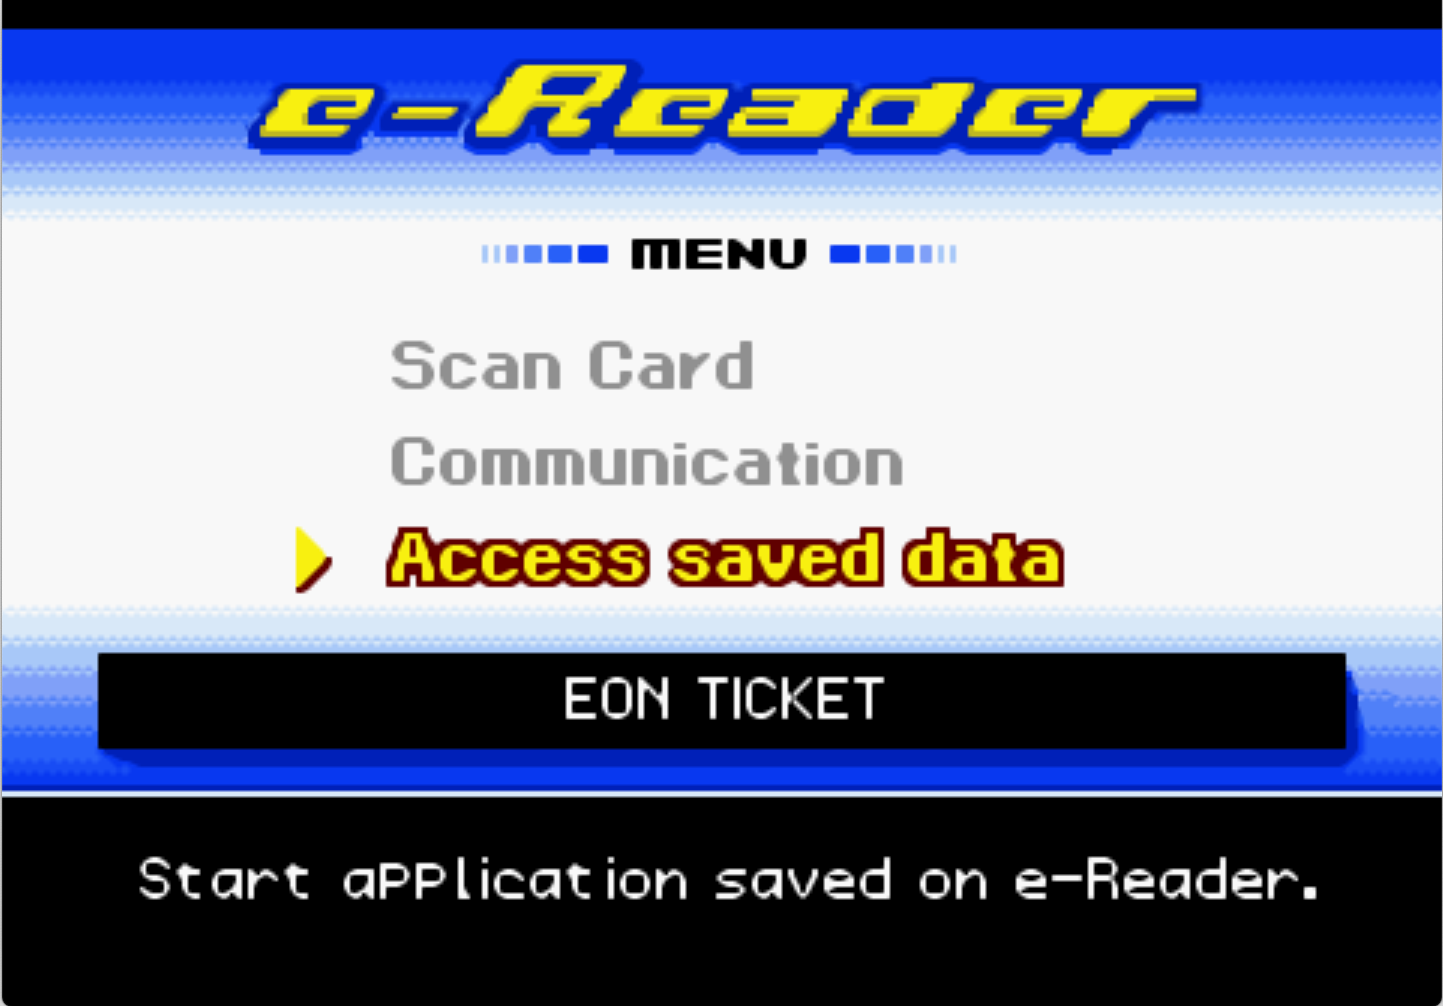 e-reader eon ticket